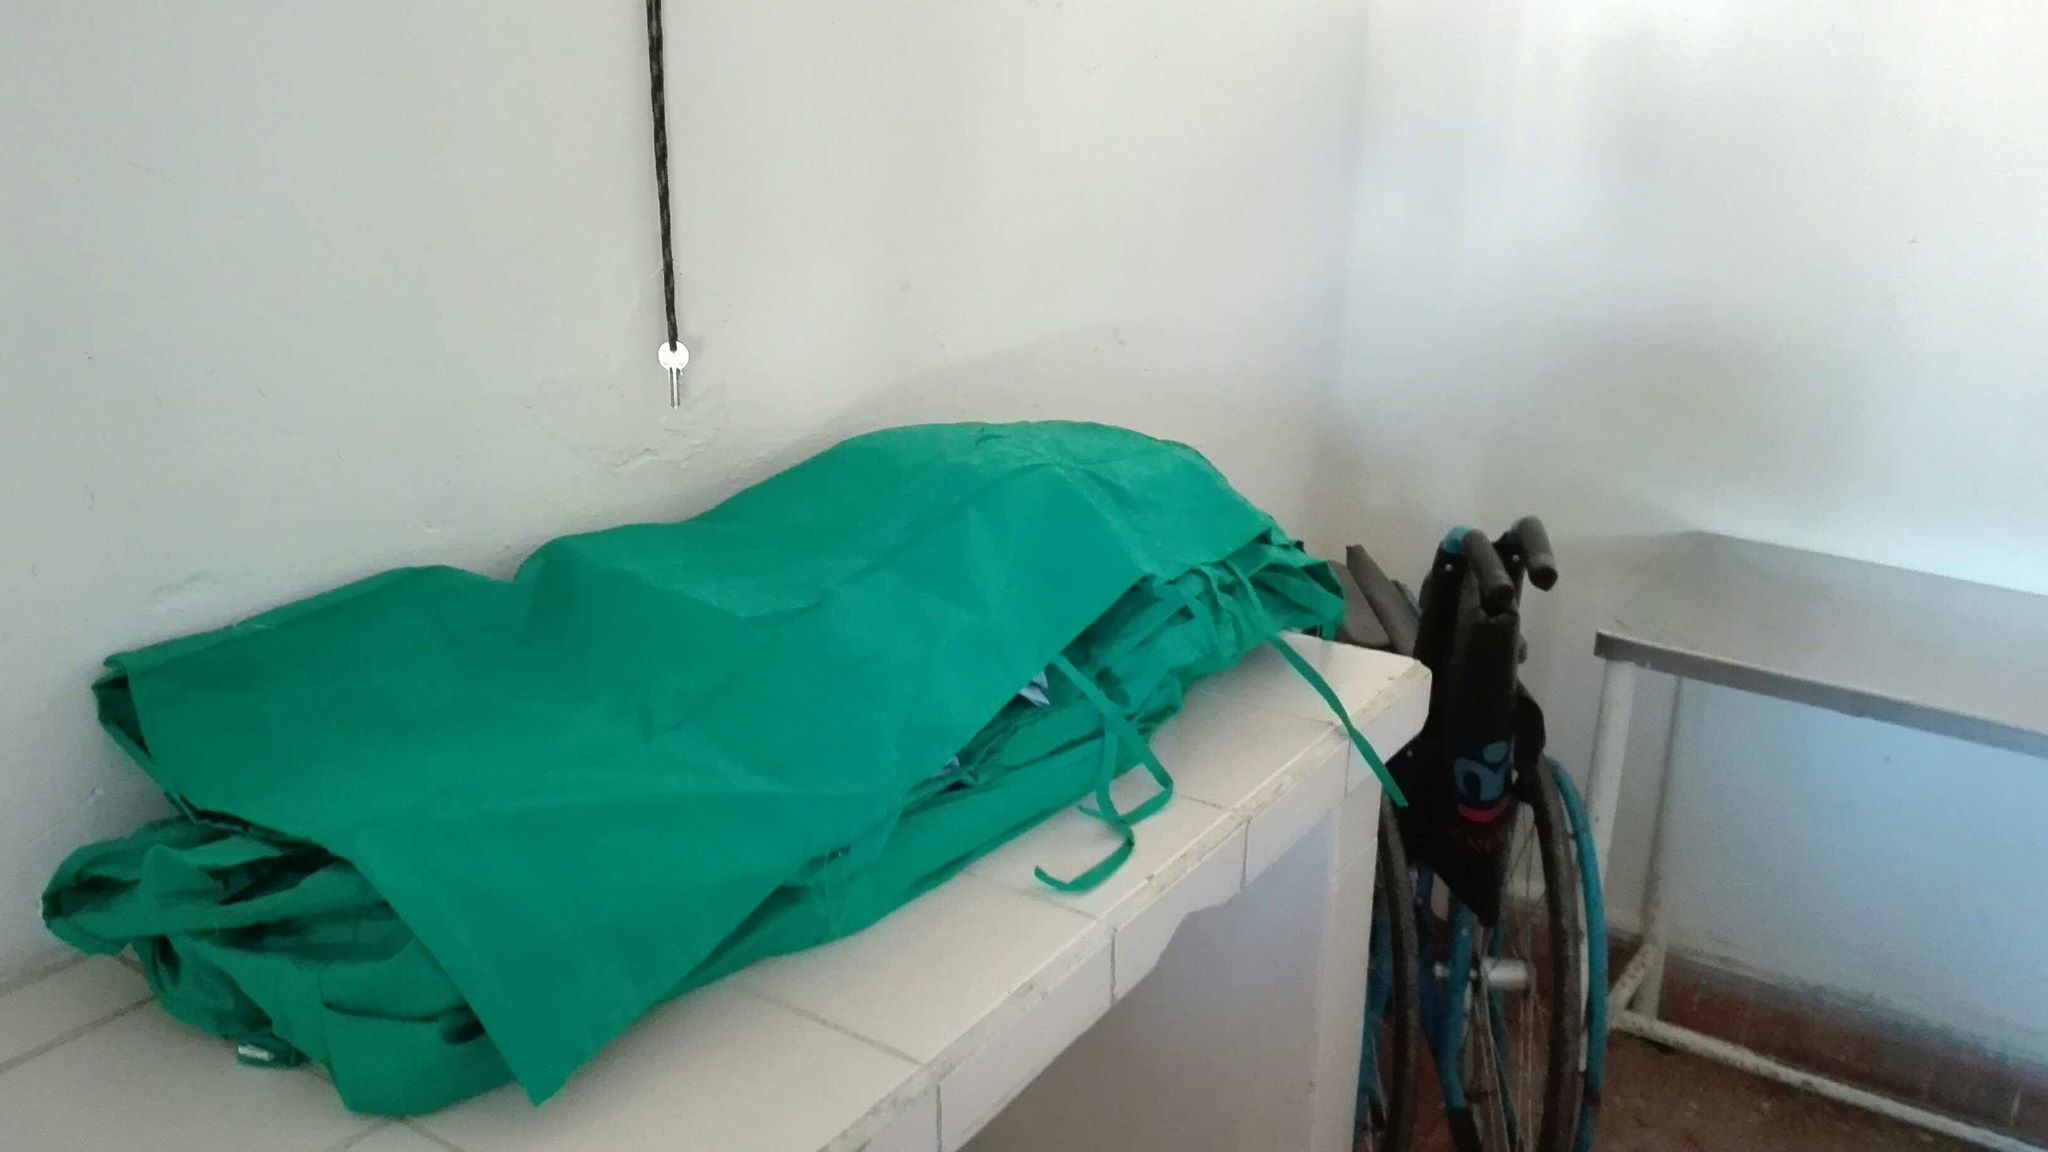 Habilitan sala de aislamiento en el Hogar de ancianos de Cabaiguán para la atención a abuelos con síntomas respiratorios